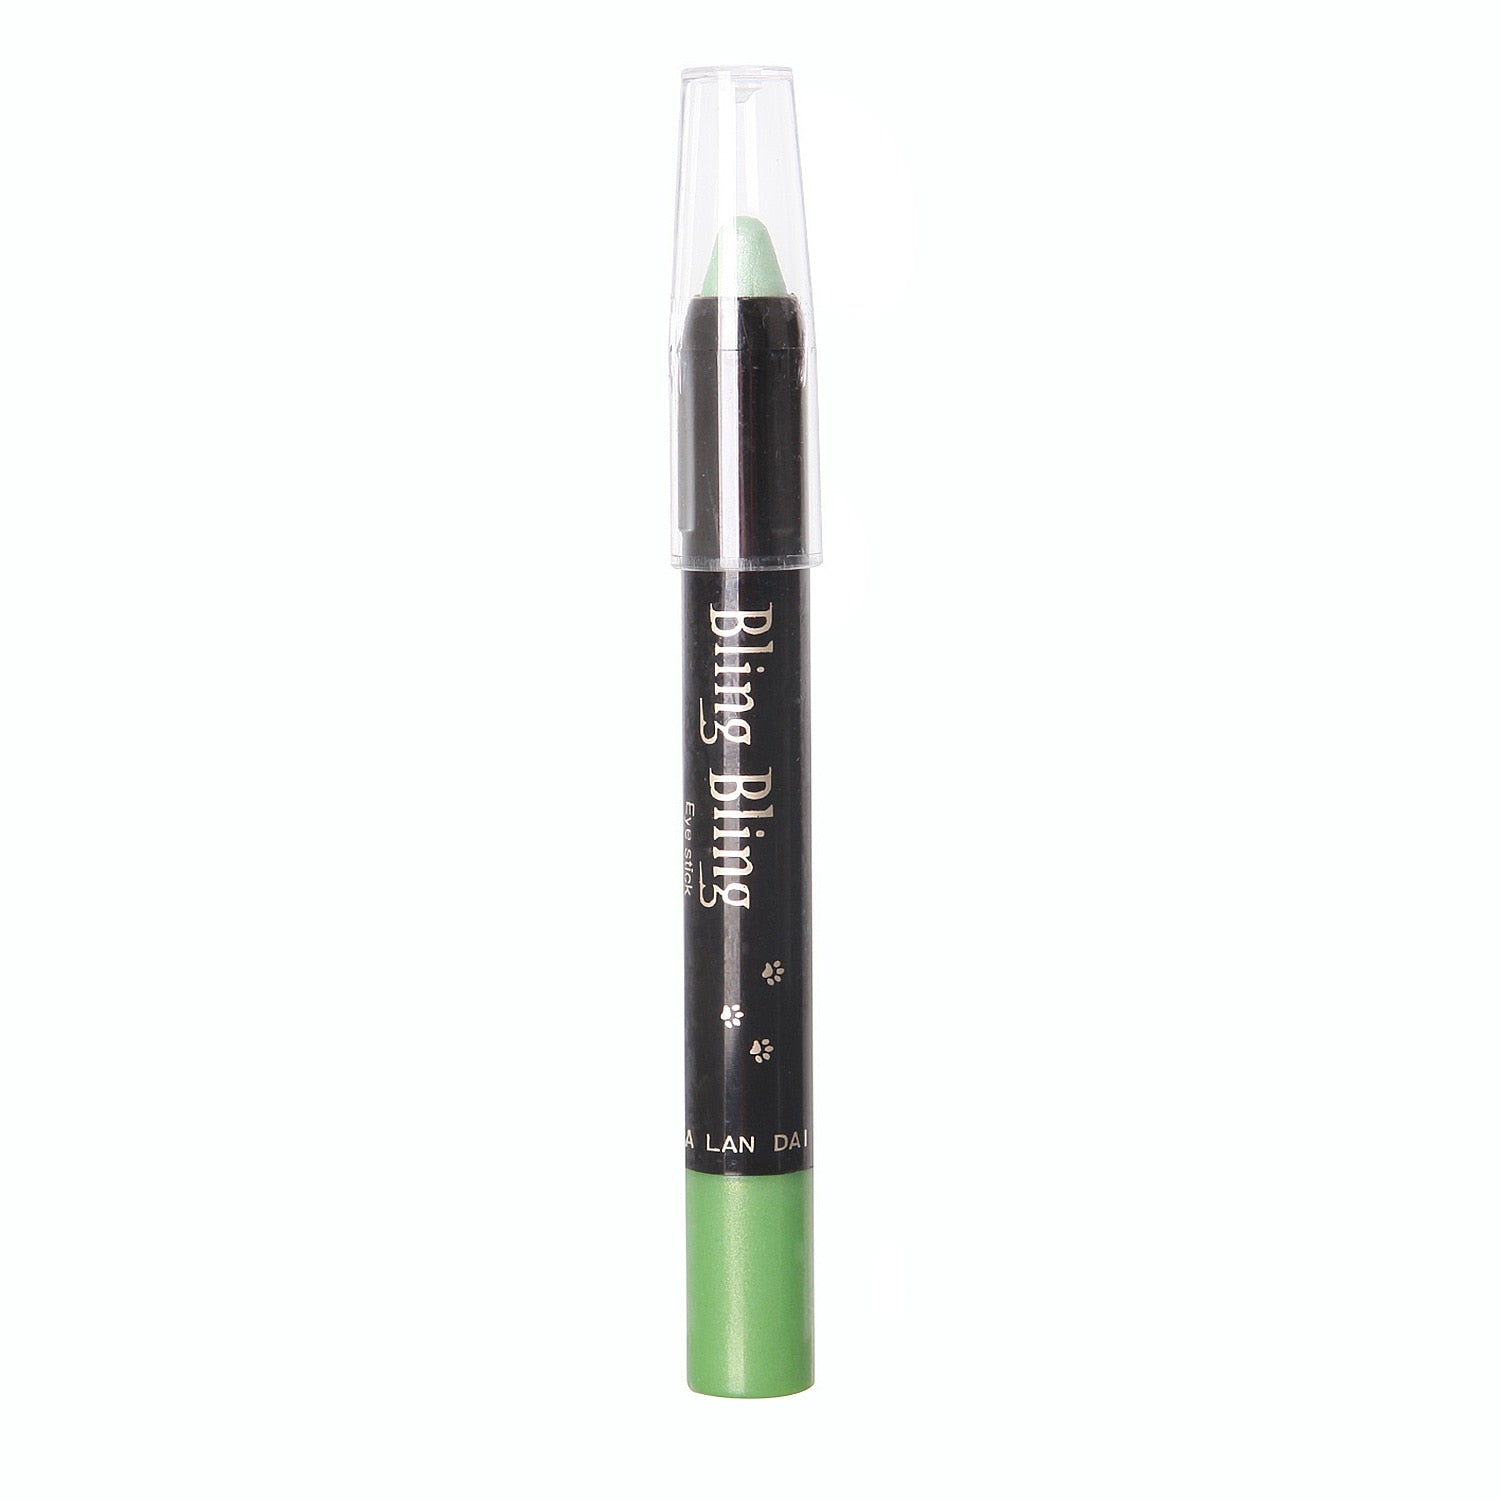 15 Colors Pearlescent Eyeshadow Pencil Waterproof Long Lasting Glitter Shimmer Eye Shadow Pen Eyeliner Stick Eyes Makeup Tools